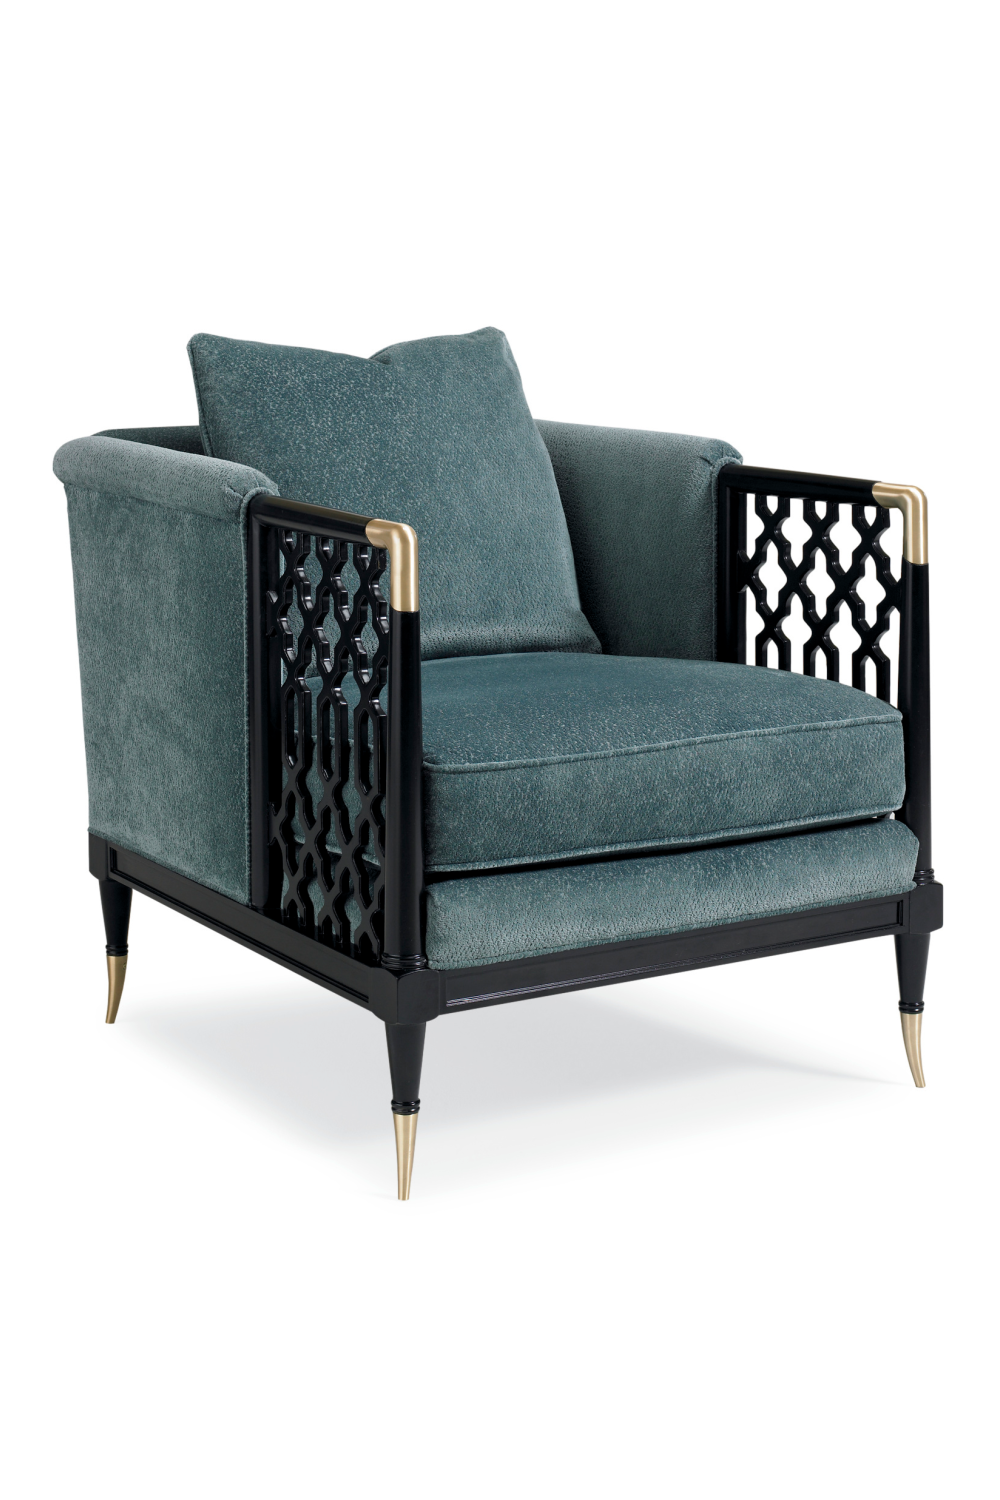 Fretwork Lounge Chair | Caracole Lattice Entertain You | Oroa.com